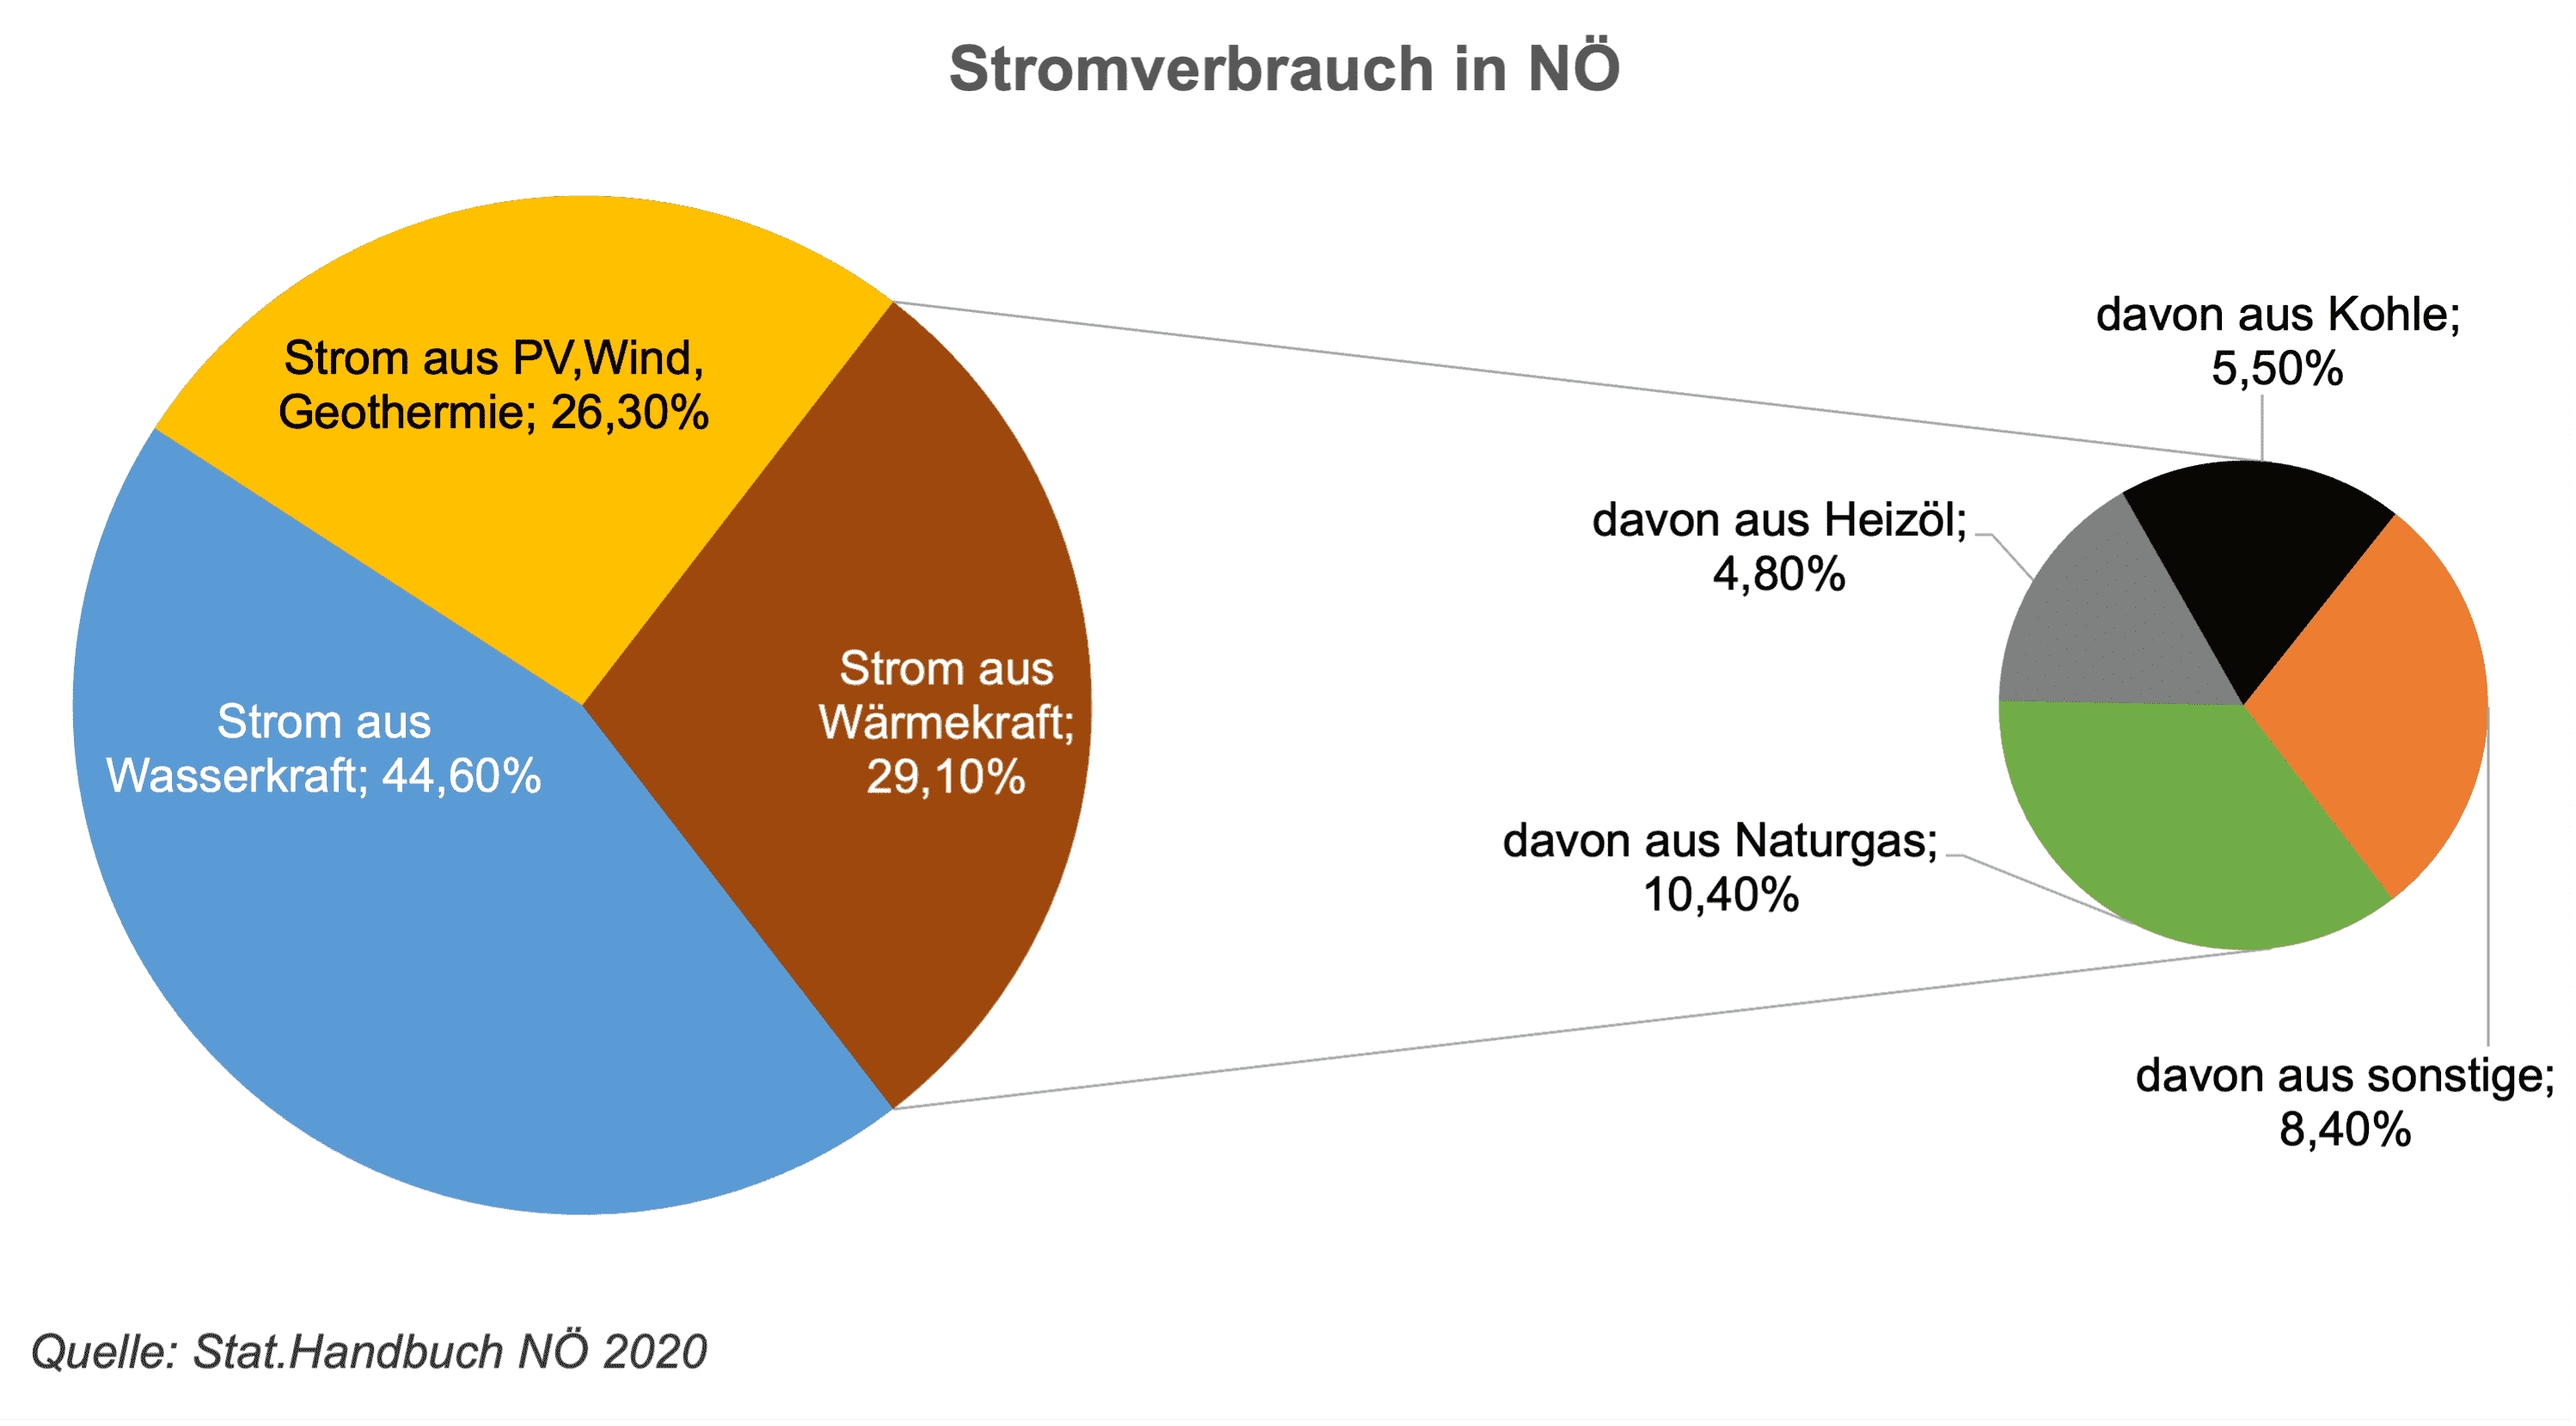 Die Grafik zeigt die Bedeutung der Wasserkraft (44%) für die Strombereitstellung und die gute Ausgangssituation in Niederösterreich für die Substitution von nicht erneuerbaren Stromquellen. Strom aus PV, Wind und Geothermie liegt bei 26% und Strom aus Wärmekraft bei 29%. Letzteres gliedert sic auf in Strom aus Naturgas 10%, Sonstige 8%, Kohle 5% und Heizöl 5%. Der Gesamtstromverbrauch in Österreich soll ab dem Jahr 2030 zu 100% bilanziell aus erneuerbaren Energiequellen gedeckt werden.